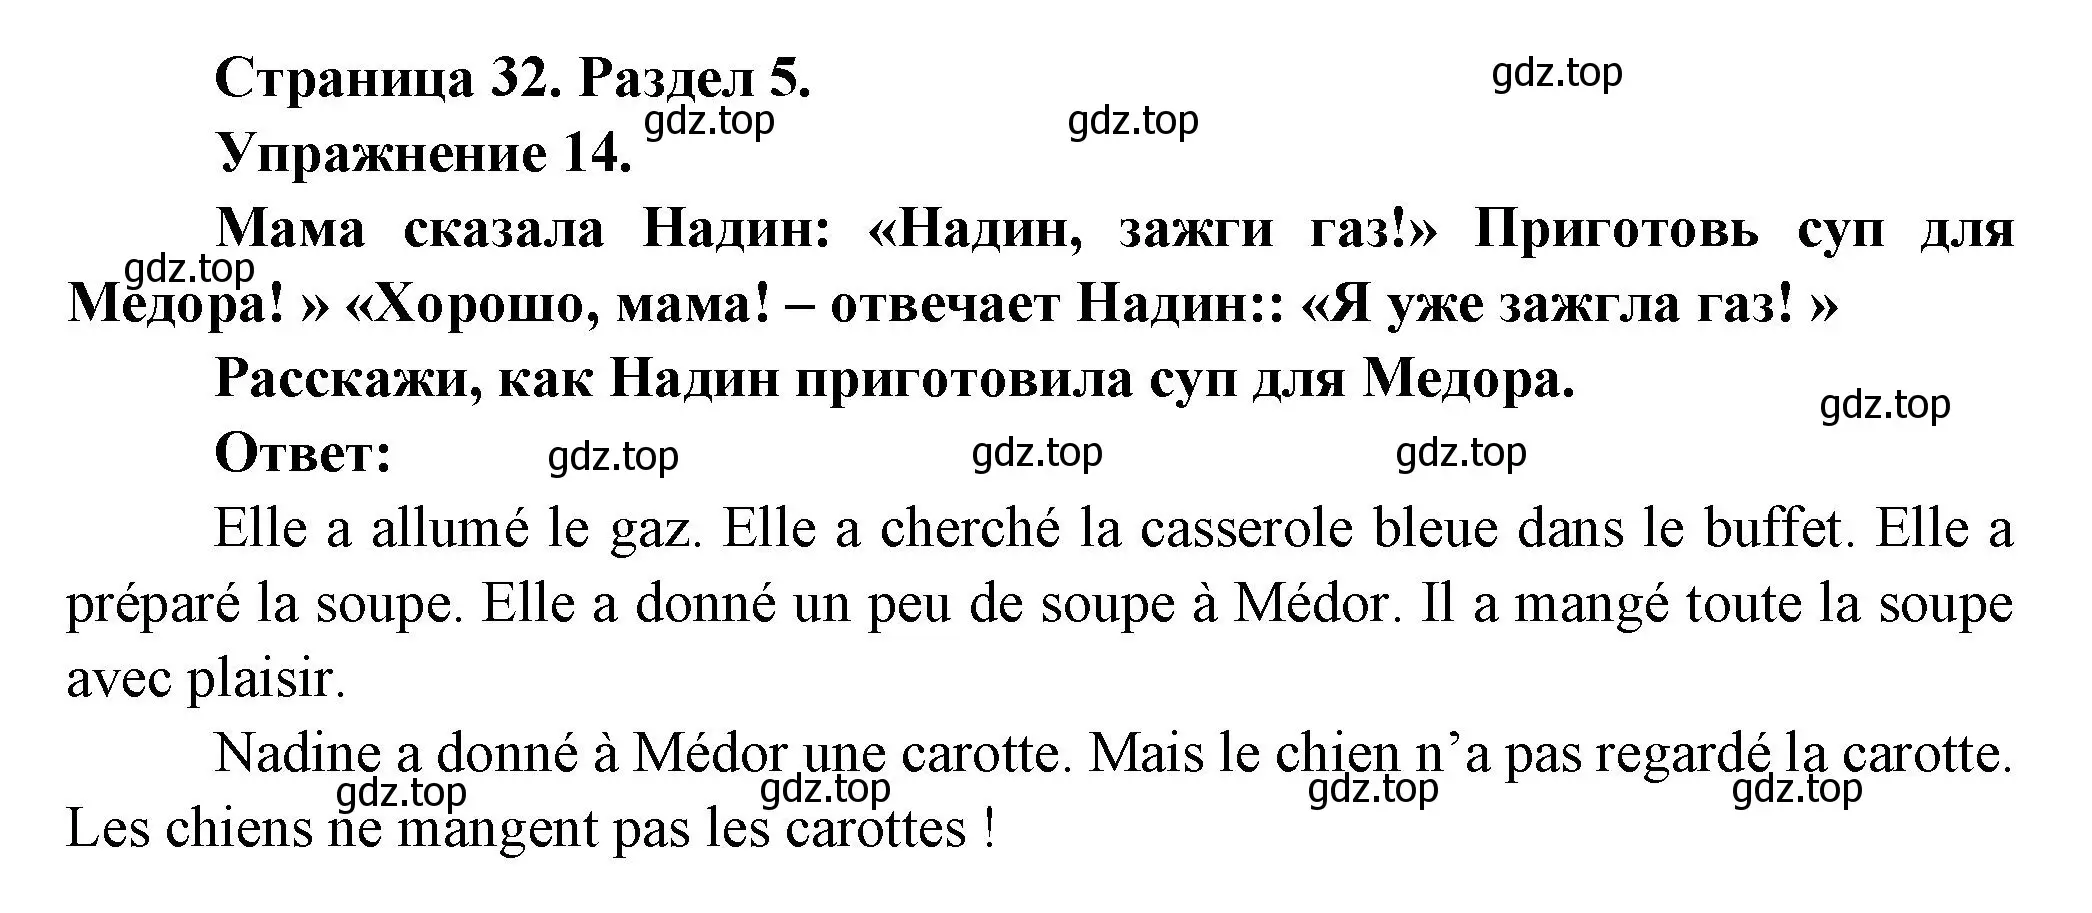 Решение номер 14 (страница 32) гдз по французскому языку 5 класс Береговская, Белосельская, учебник 2 часть